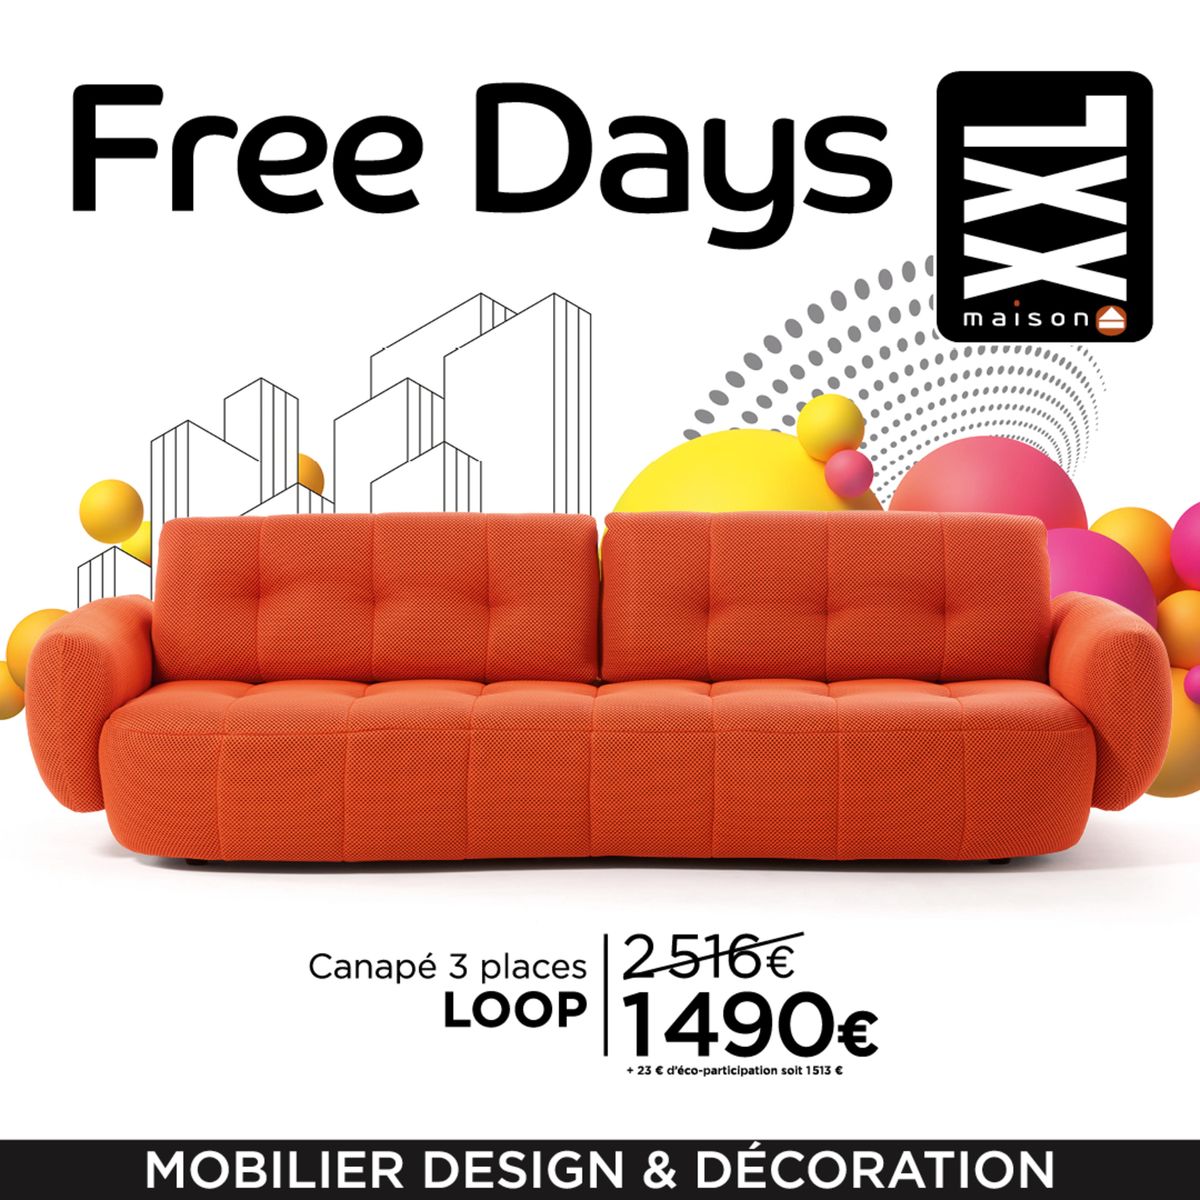 Catalogue Nos Free Days sont à découvrir en magasin : des offres folles sur nos canapés et meubles design, page 00001